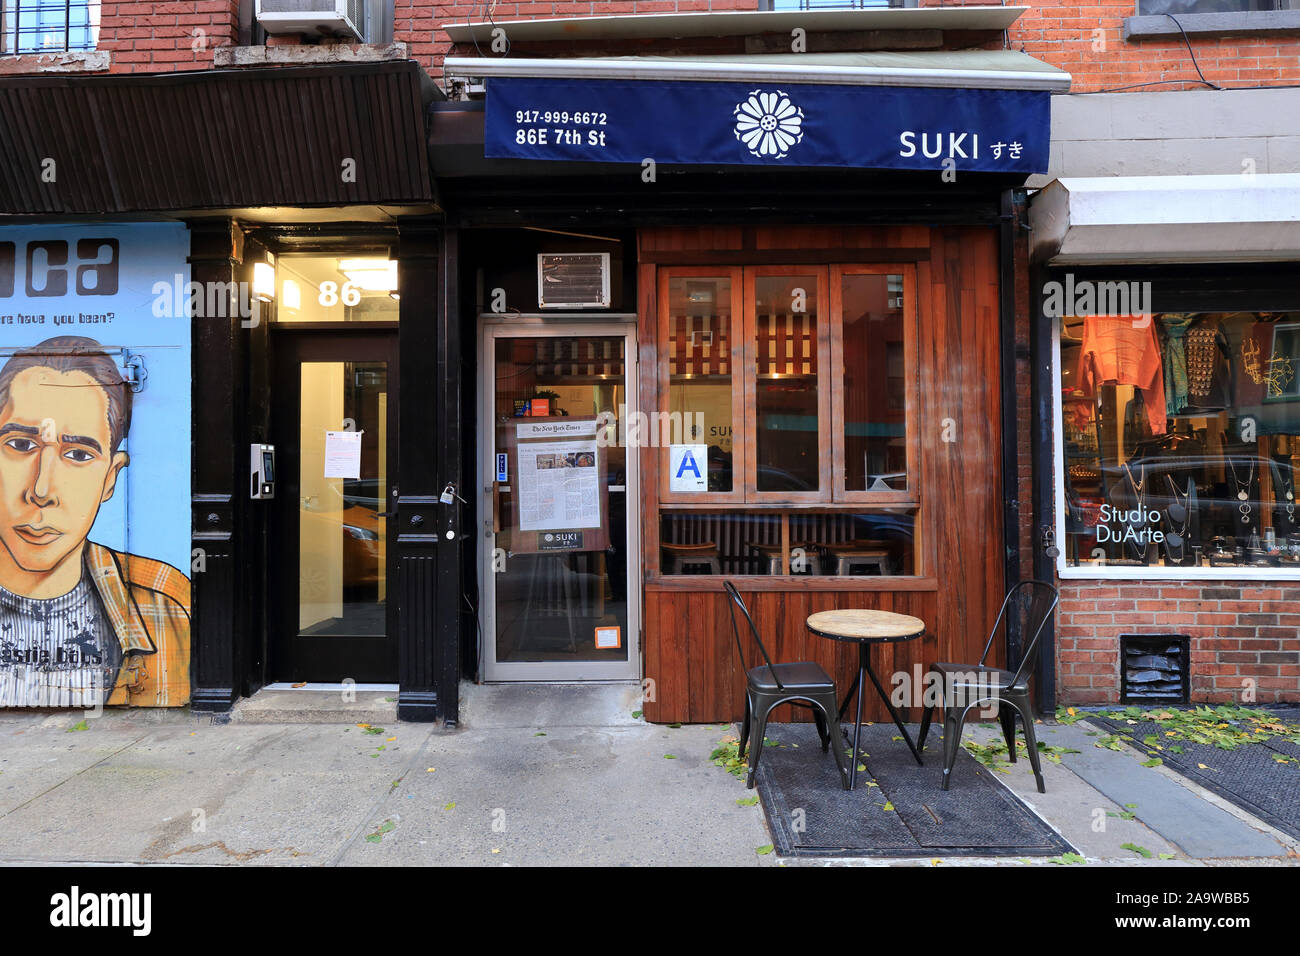 [Boutique historique] Suki, 86 East 7th St, New York, NYC photo d'un restaurant de curry japonais dans East Village. Banque D'Images